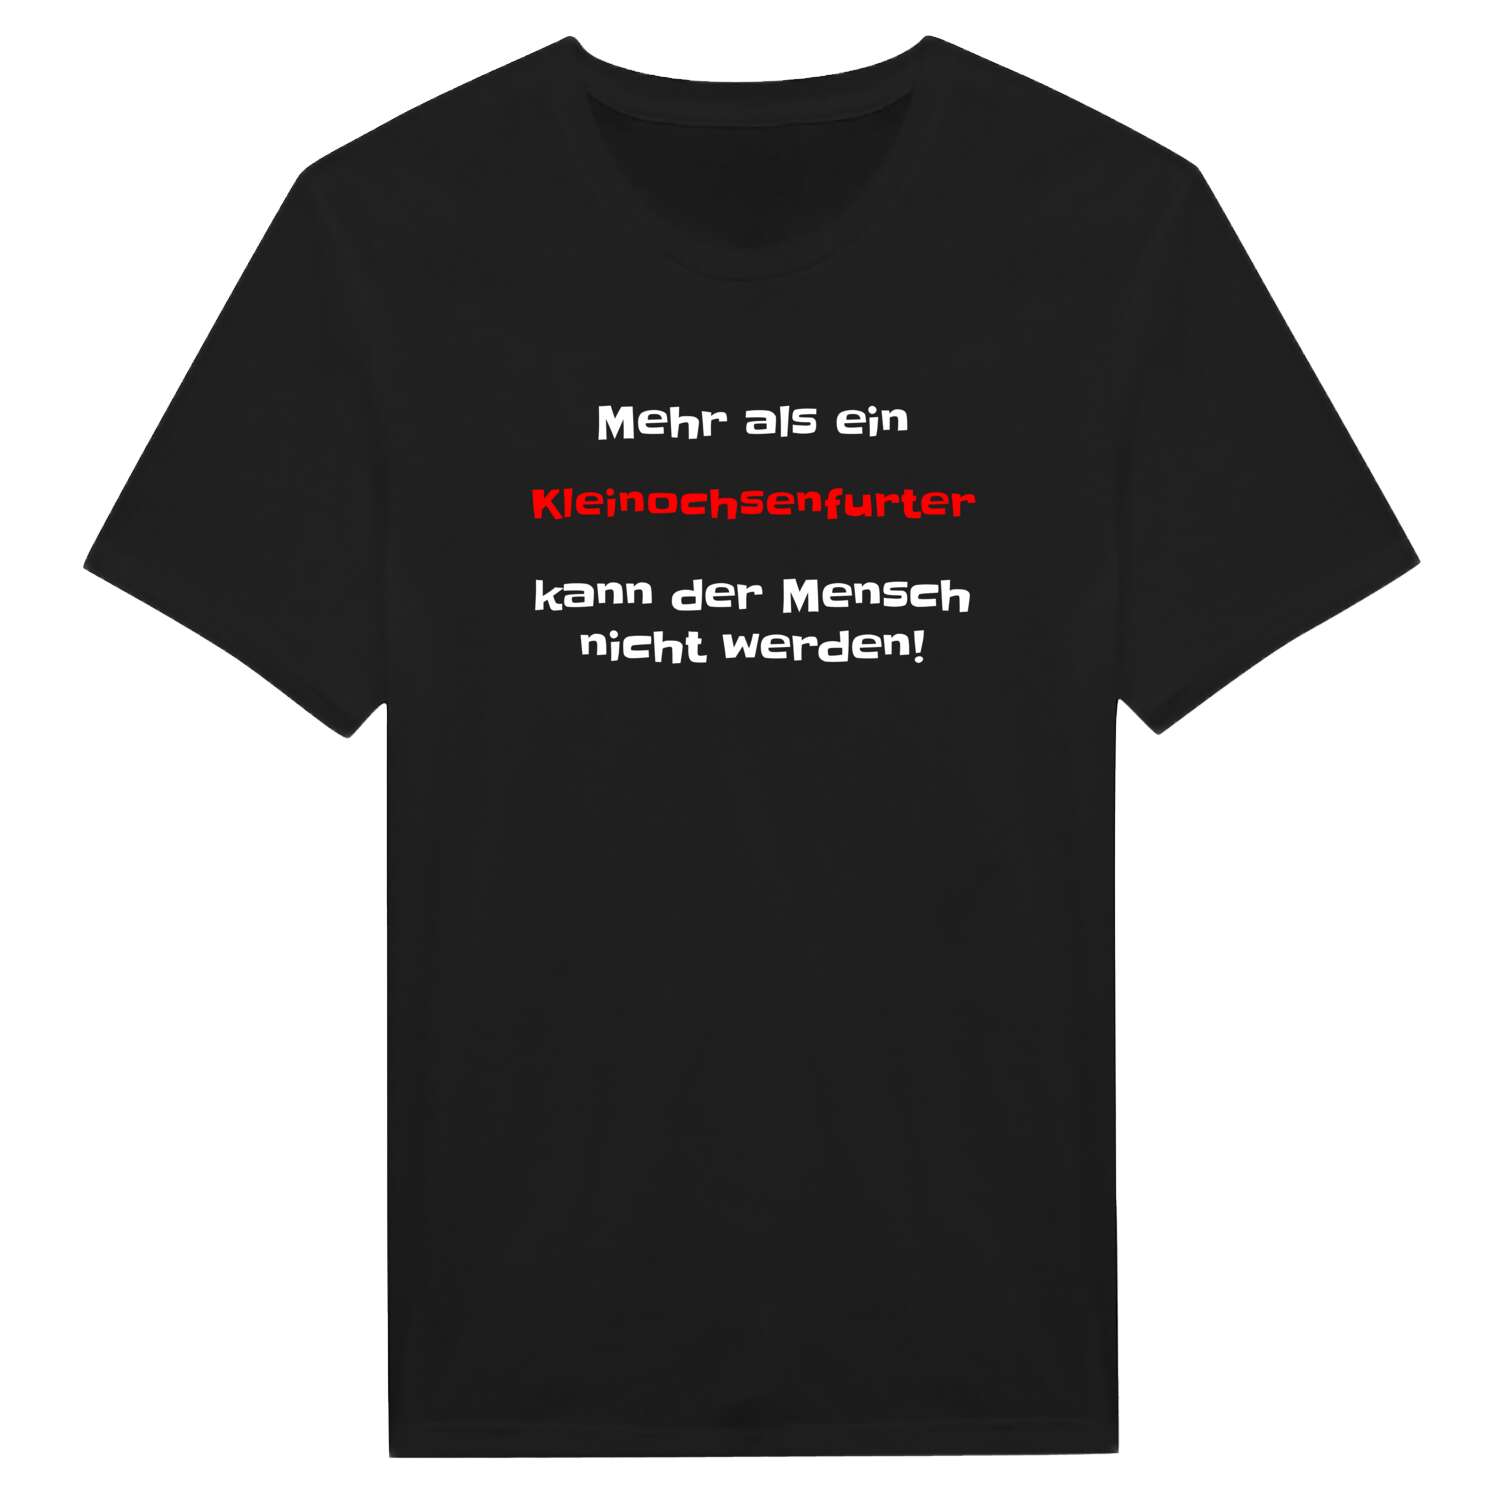 Kleinochsenfurt T-Shirt »Mehr als ein«